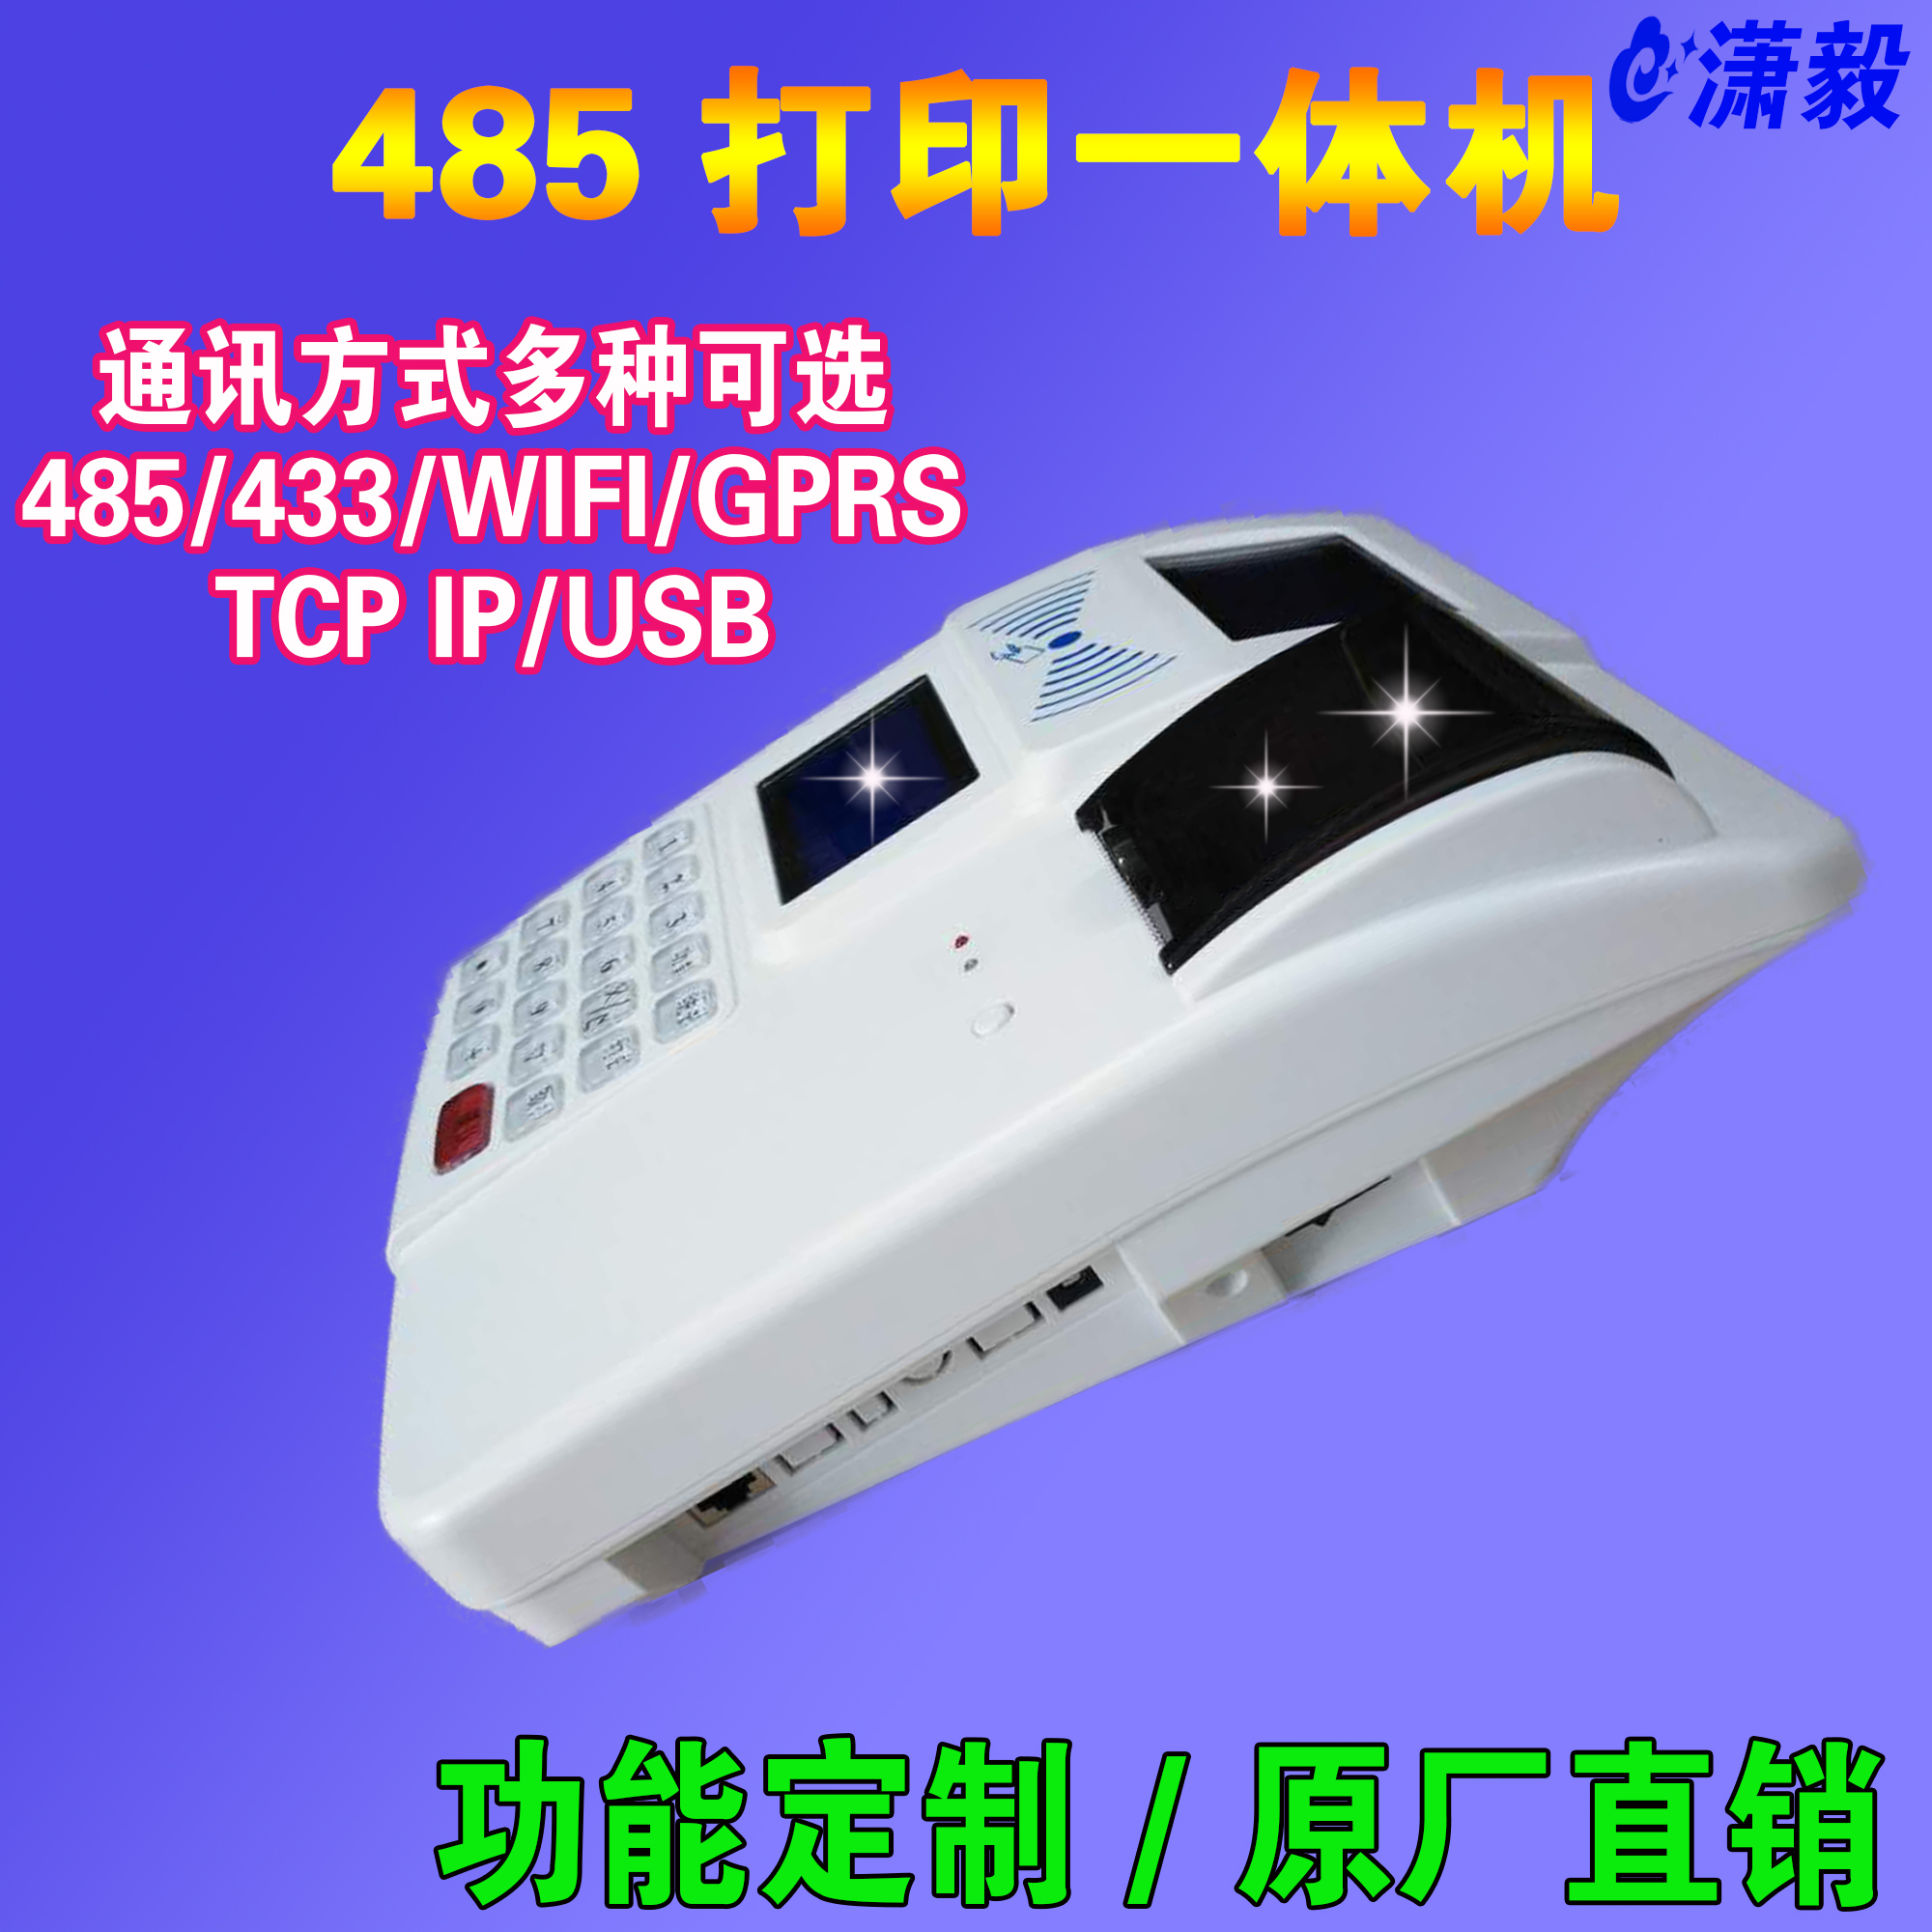 供应双屏中文液晶显示免布线型打印消费机一体机带打印功能刷卡机图片